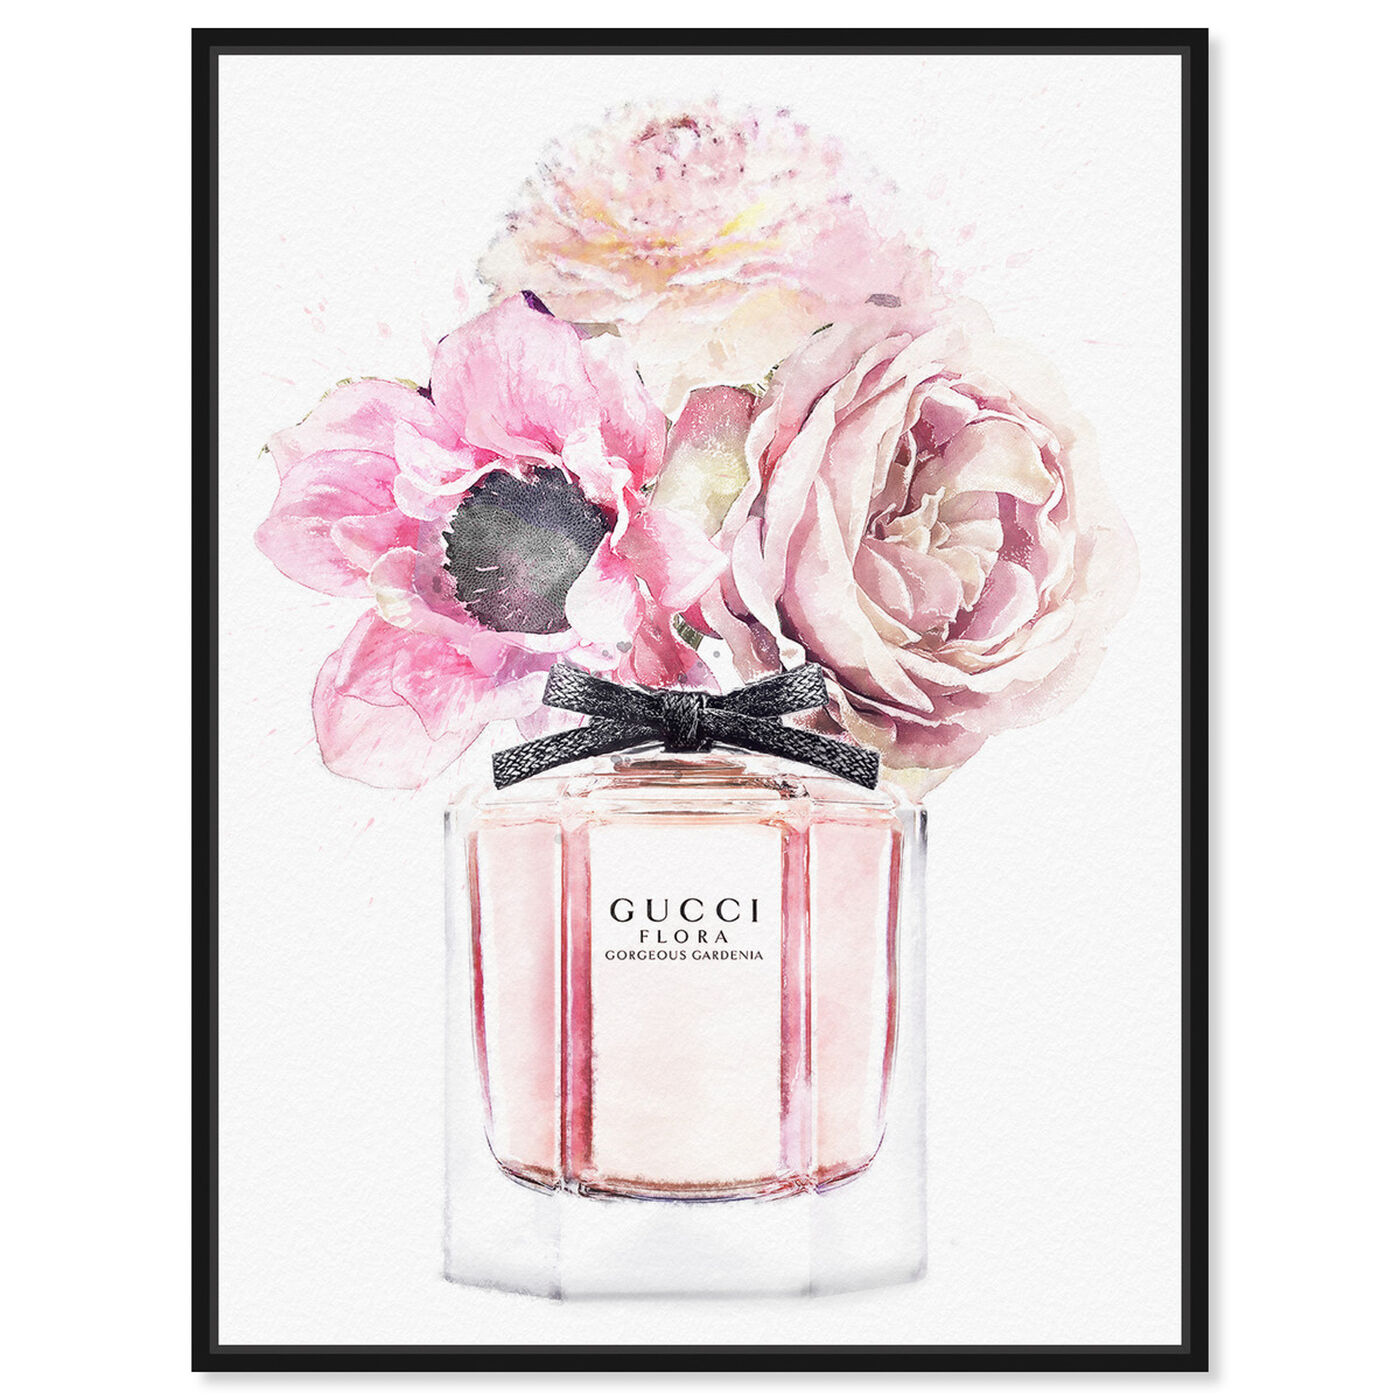 Gorgeous Gardenia Perfume